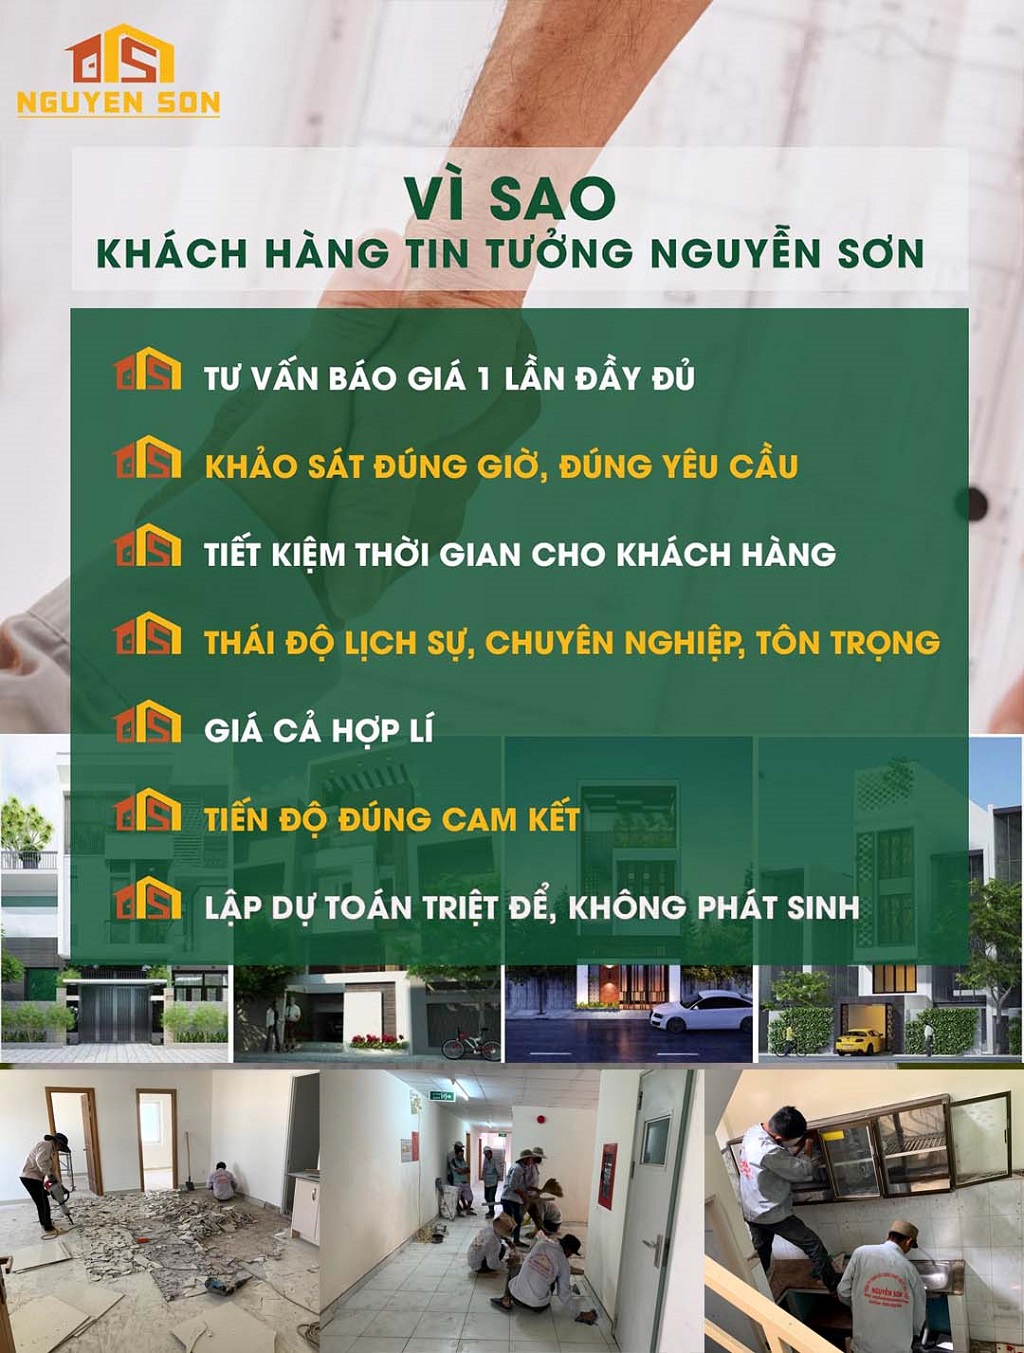 Lợi ích khi sửa chữa nhà tại Xây dựng Nguyễn Sơn